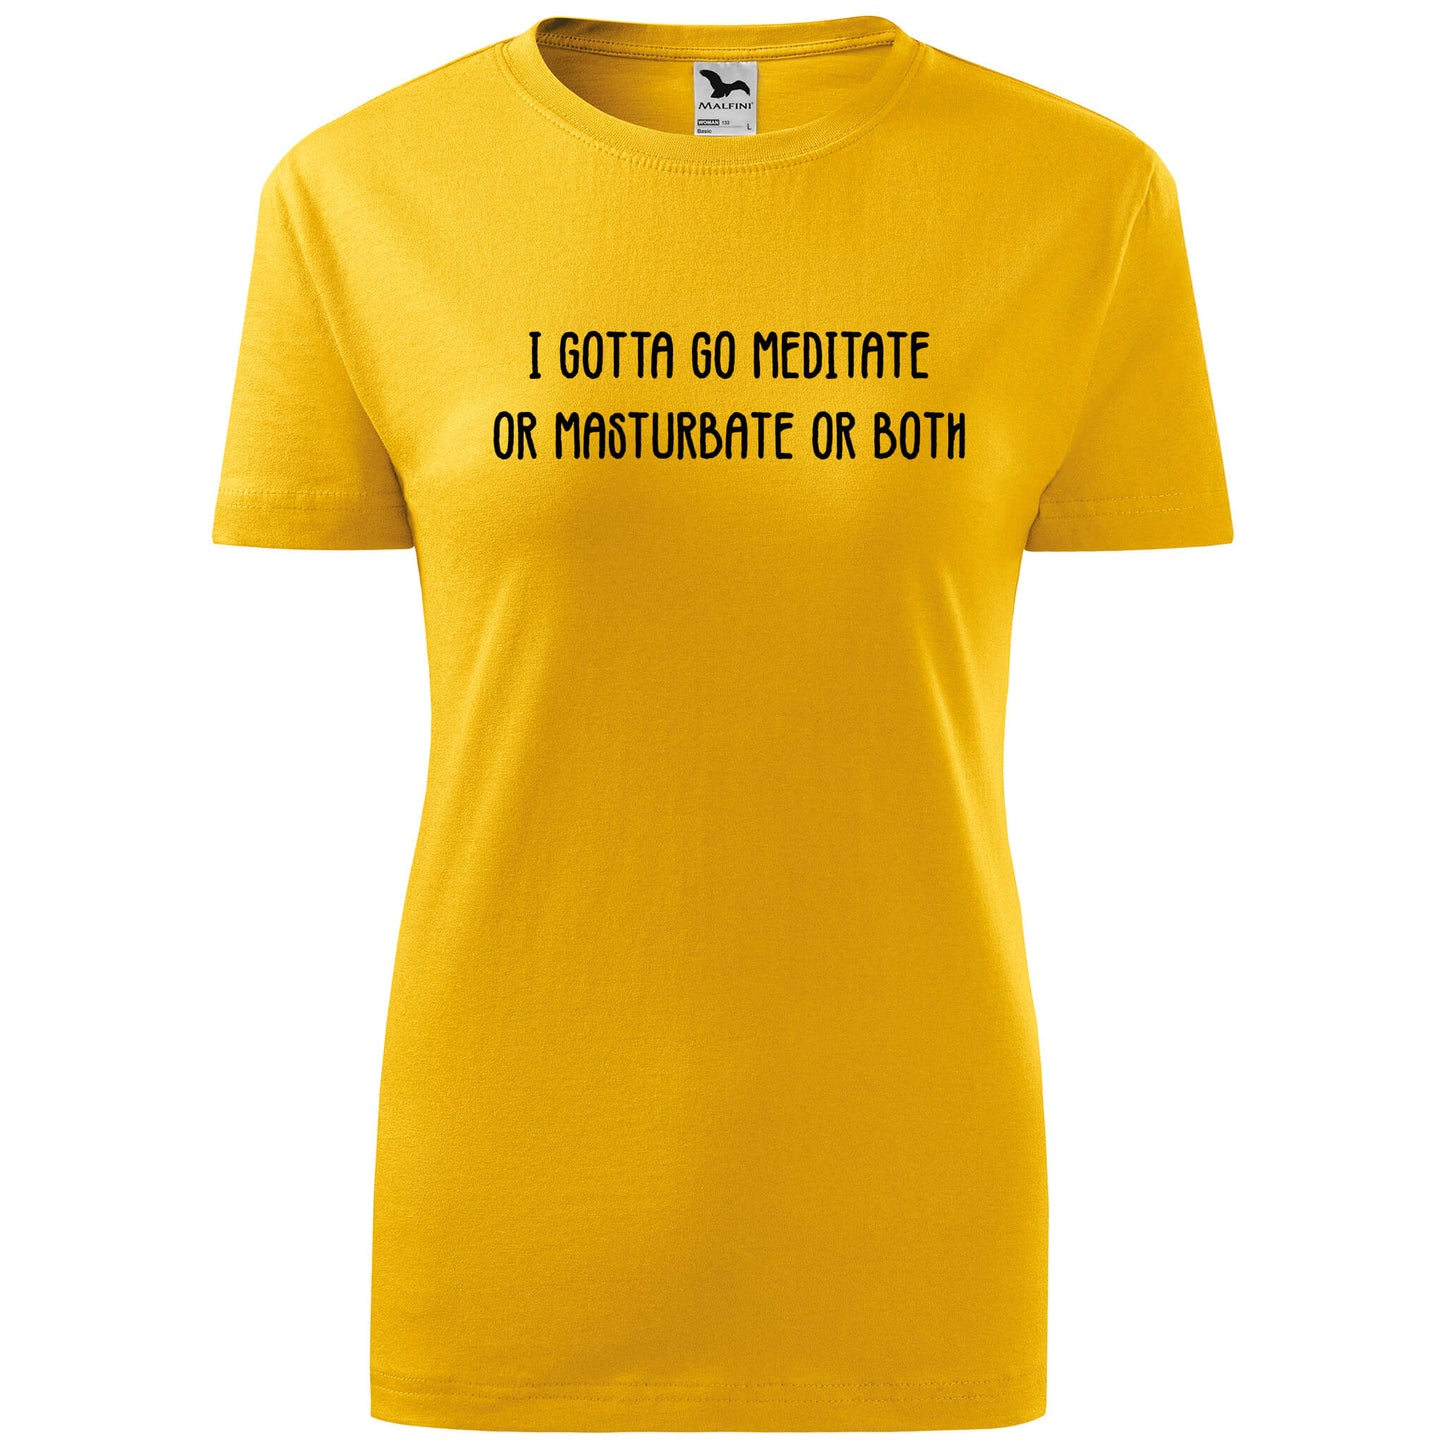 T-shirt - Gotta go meditate - rvdesignprint